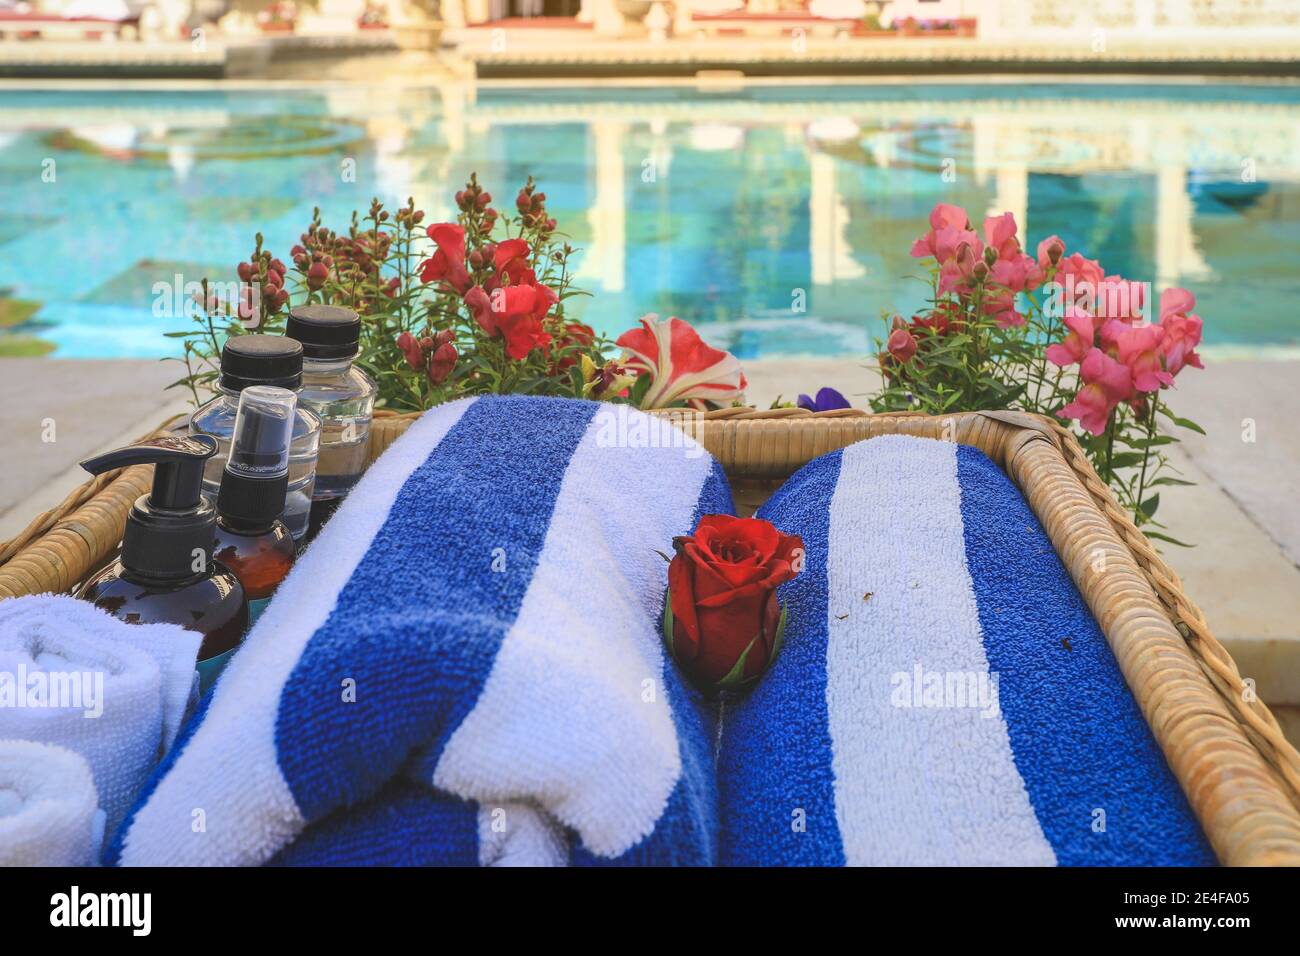 Asciugamani in rotolo e bottiglie per la cura della pelle sono sul cesto vicino a una piscina. Concetto di relax estivo Foto Stock